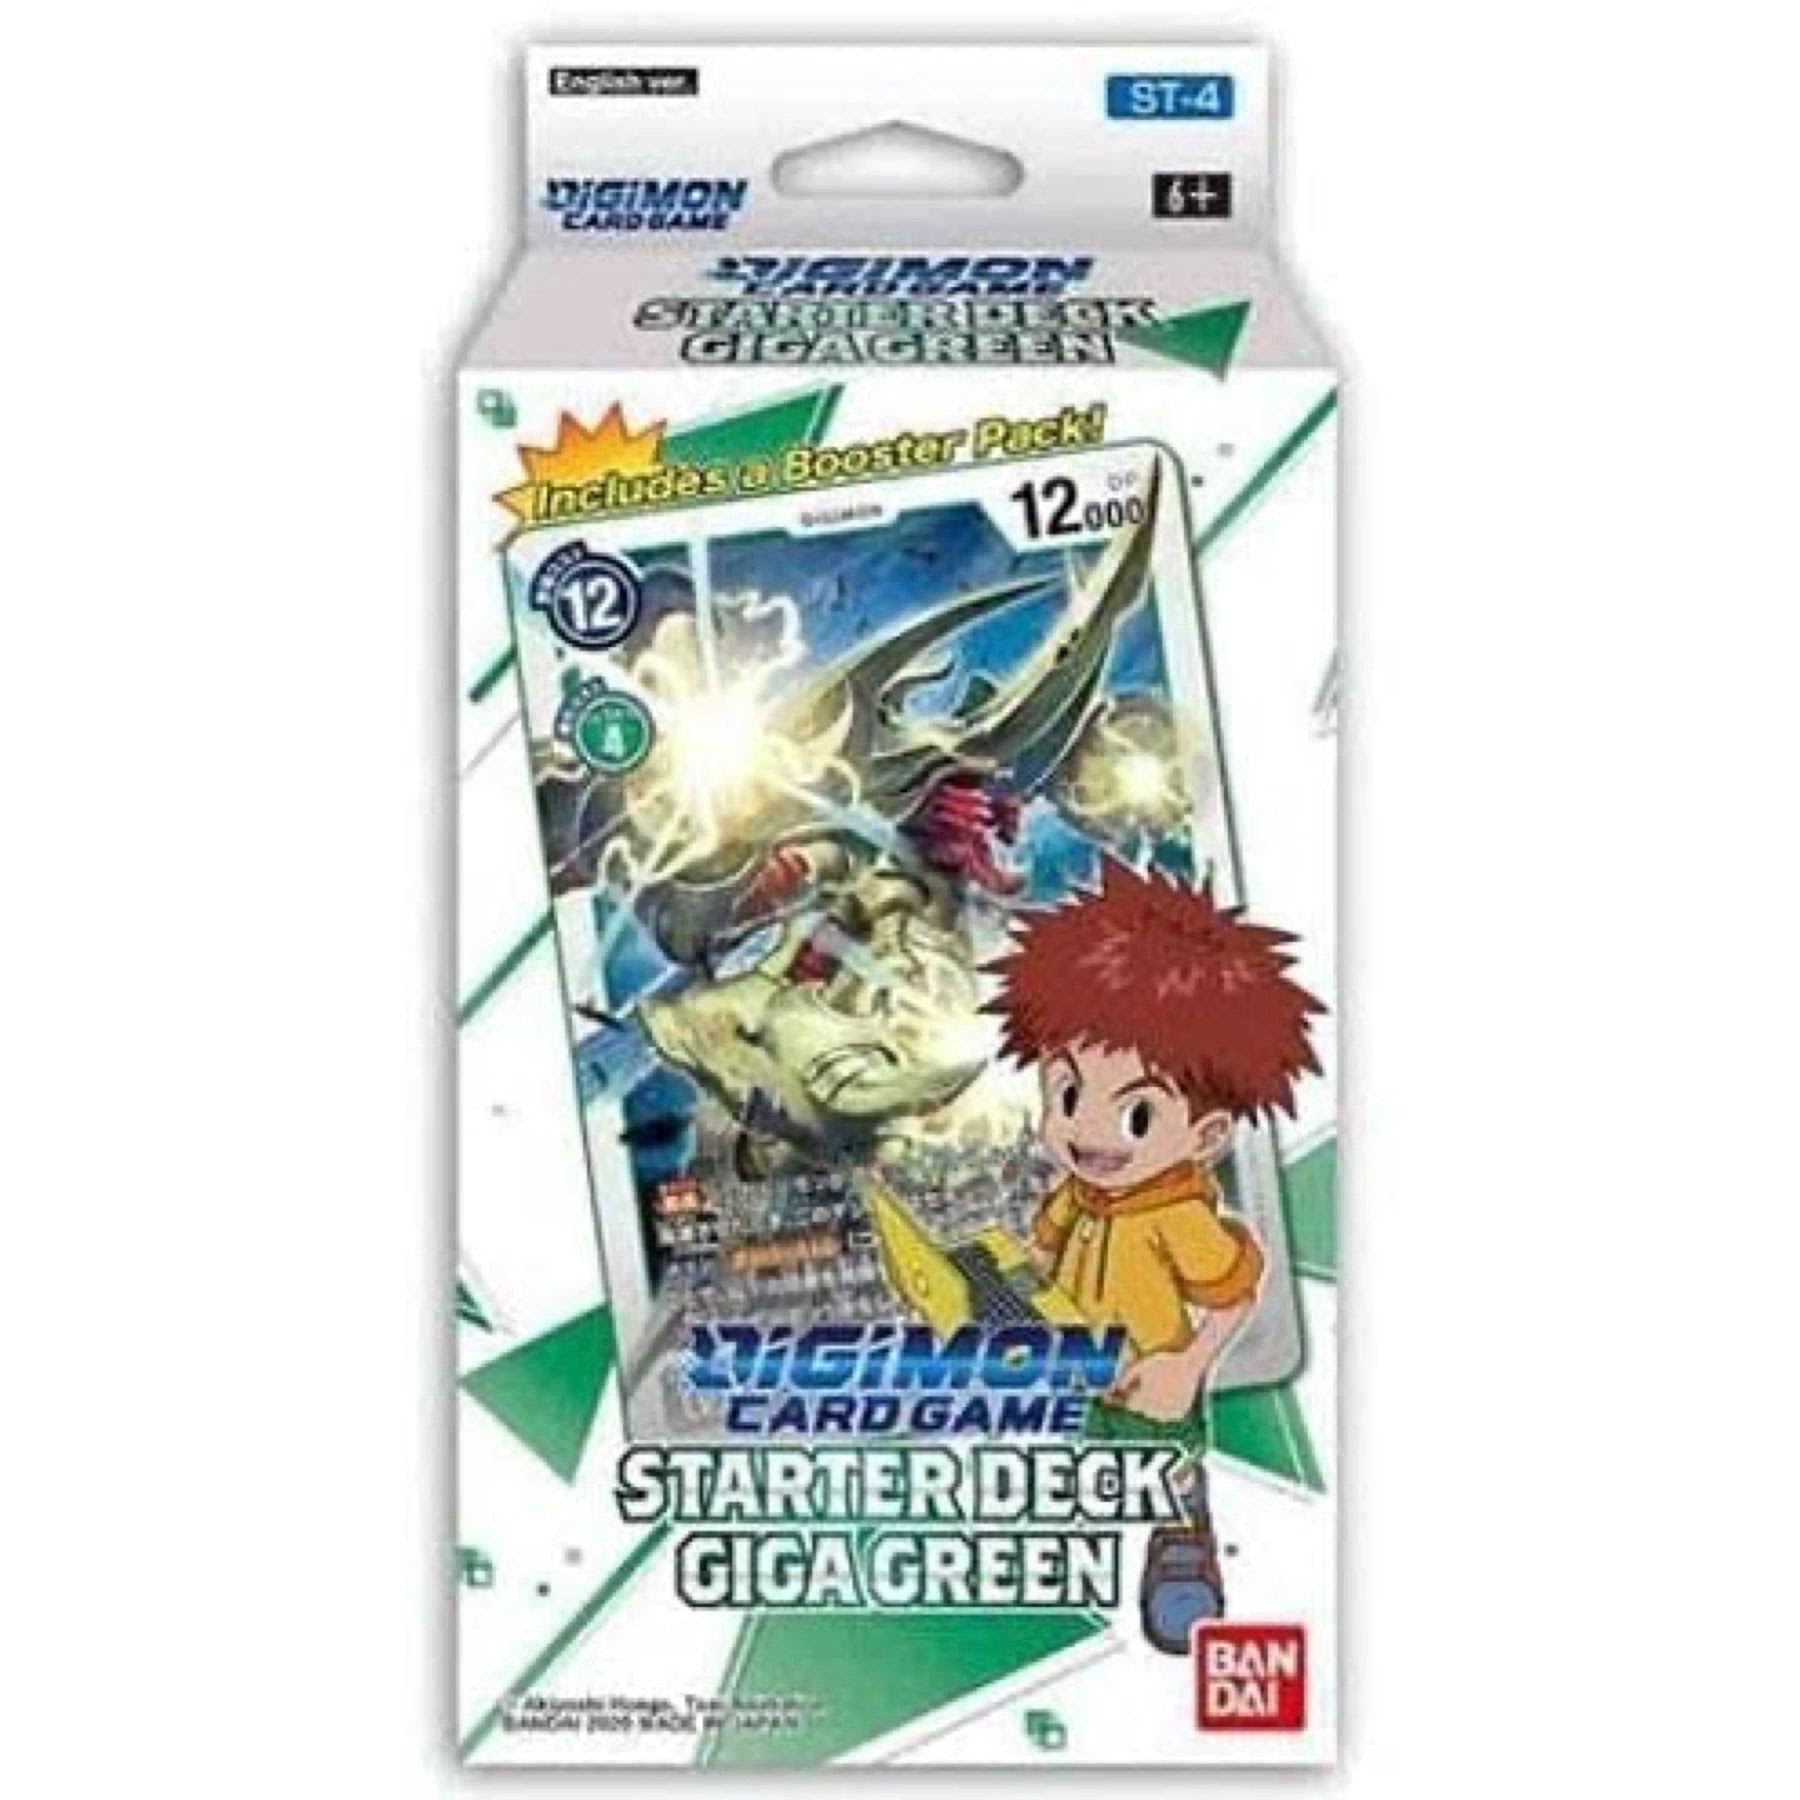 Digimon Card Game: Starter Deck - Giga Green (ST-4)